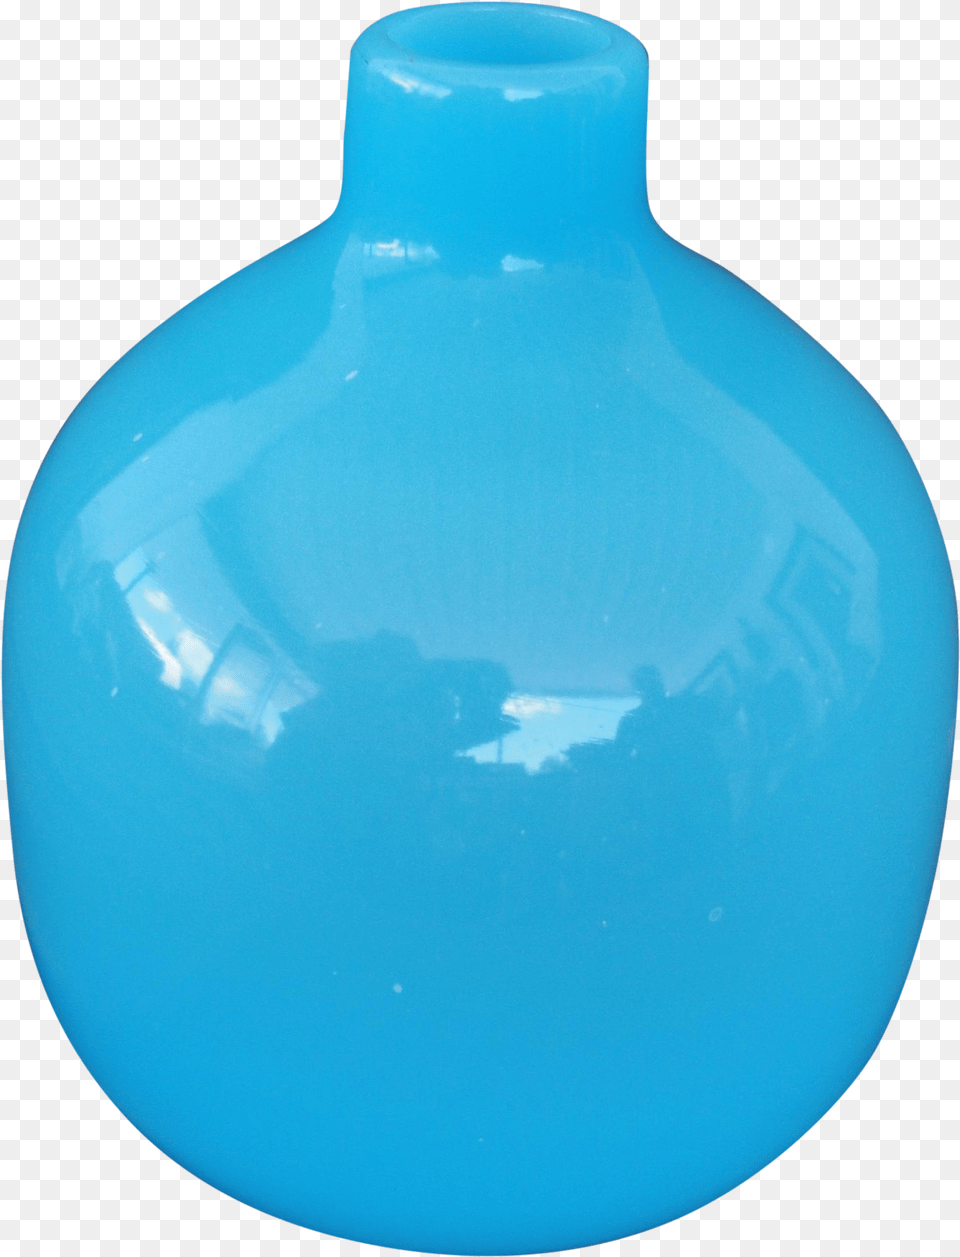 Vase, Jar, Pottery, Bottle Free Transparent Png